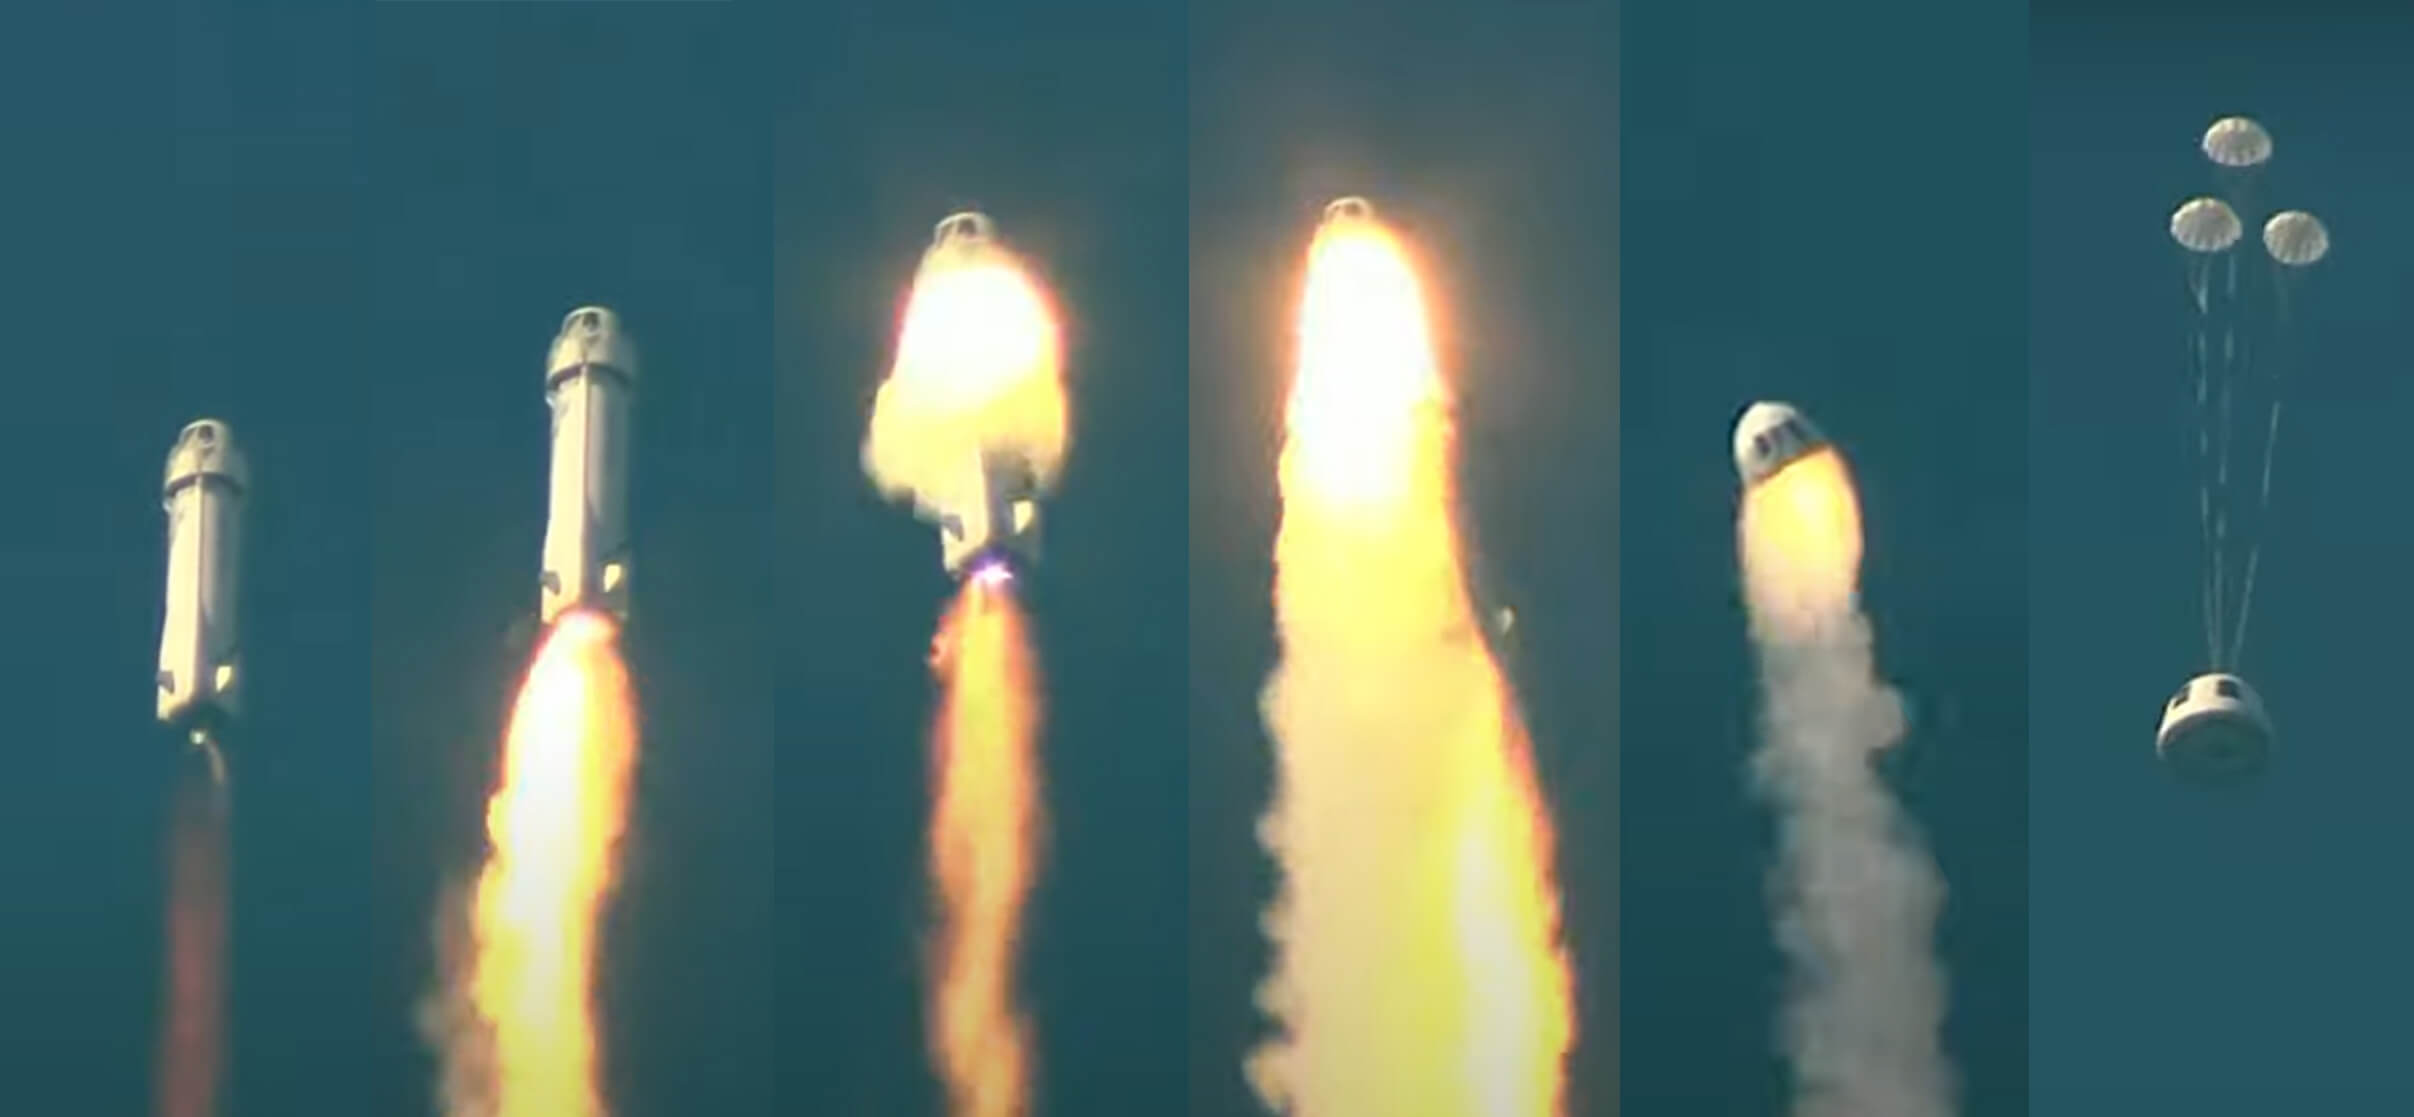 Raketlancering Blue Origin mislukt nadat motor in brand vliegt